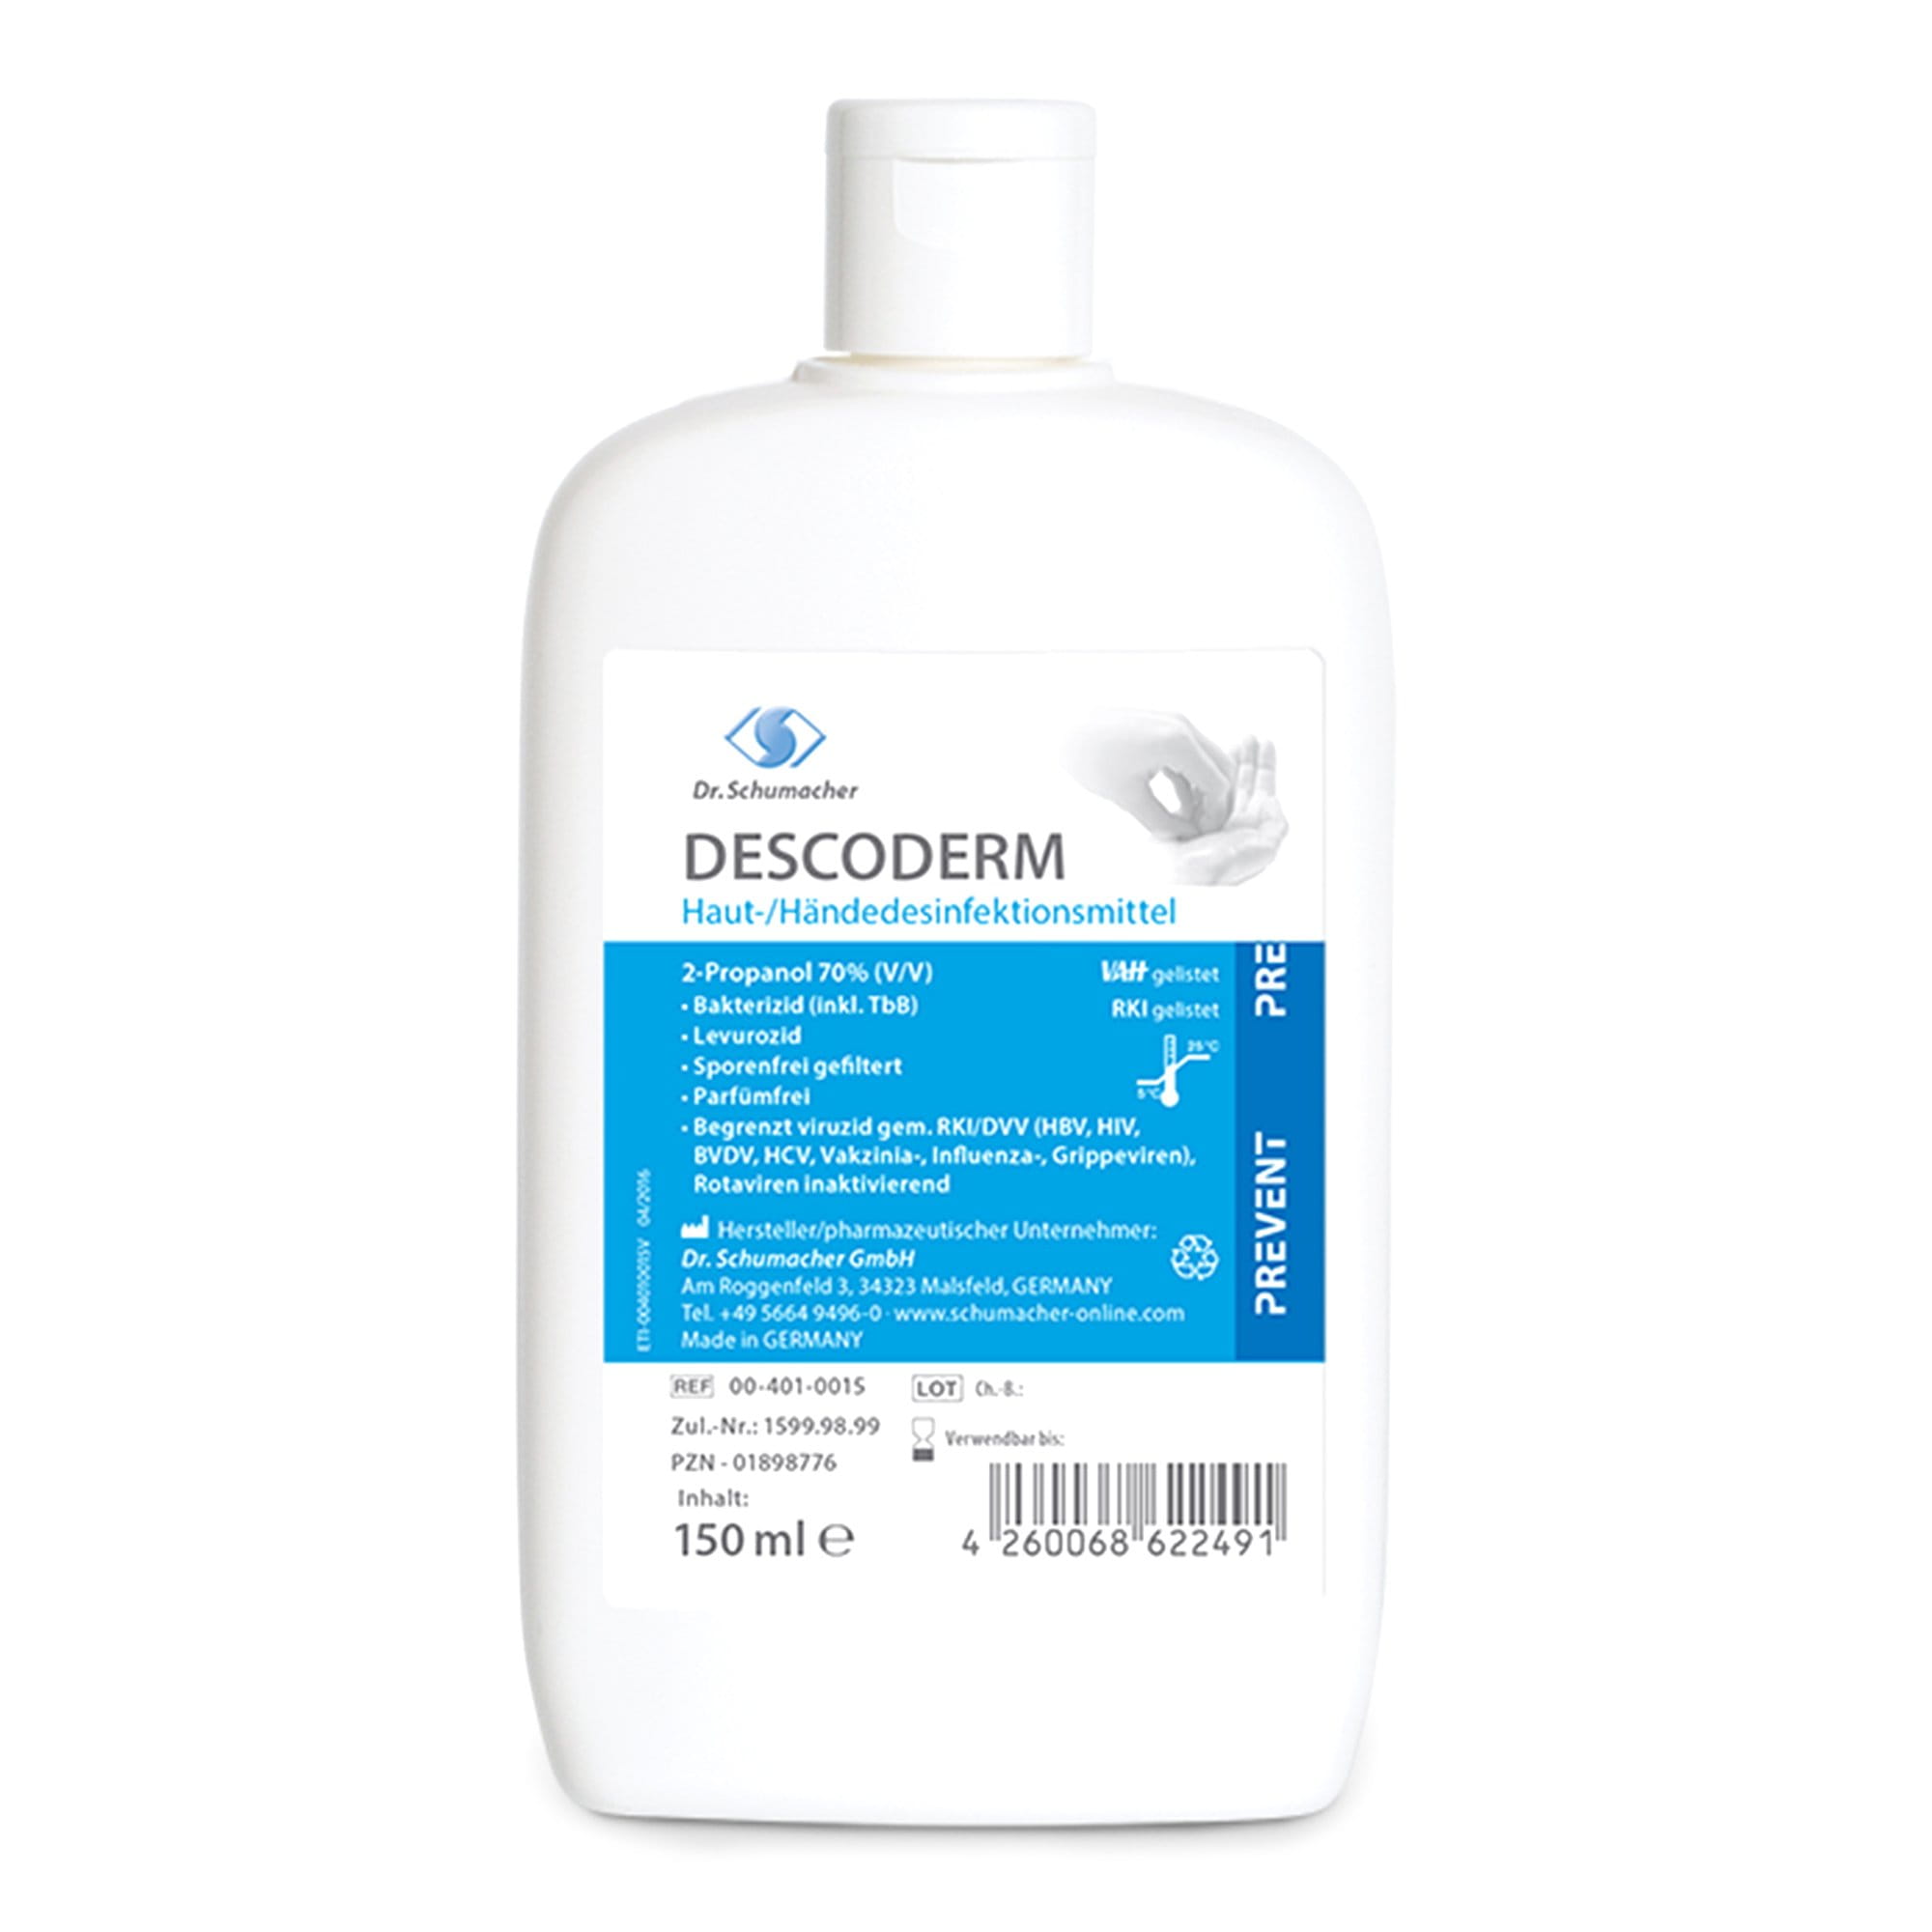 Dr. Schumacher Descoderm alkoholisches Hände- Hautdesinfektionsmittel 150 ml Kittelflasche 00-401-0015_1